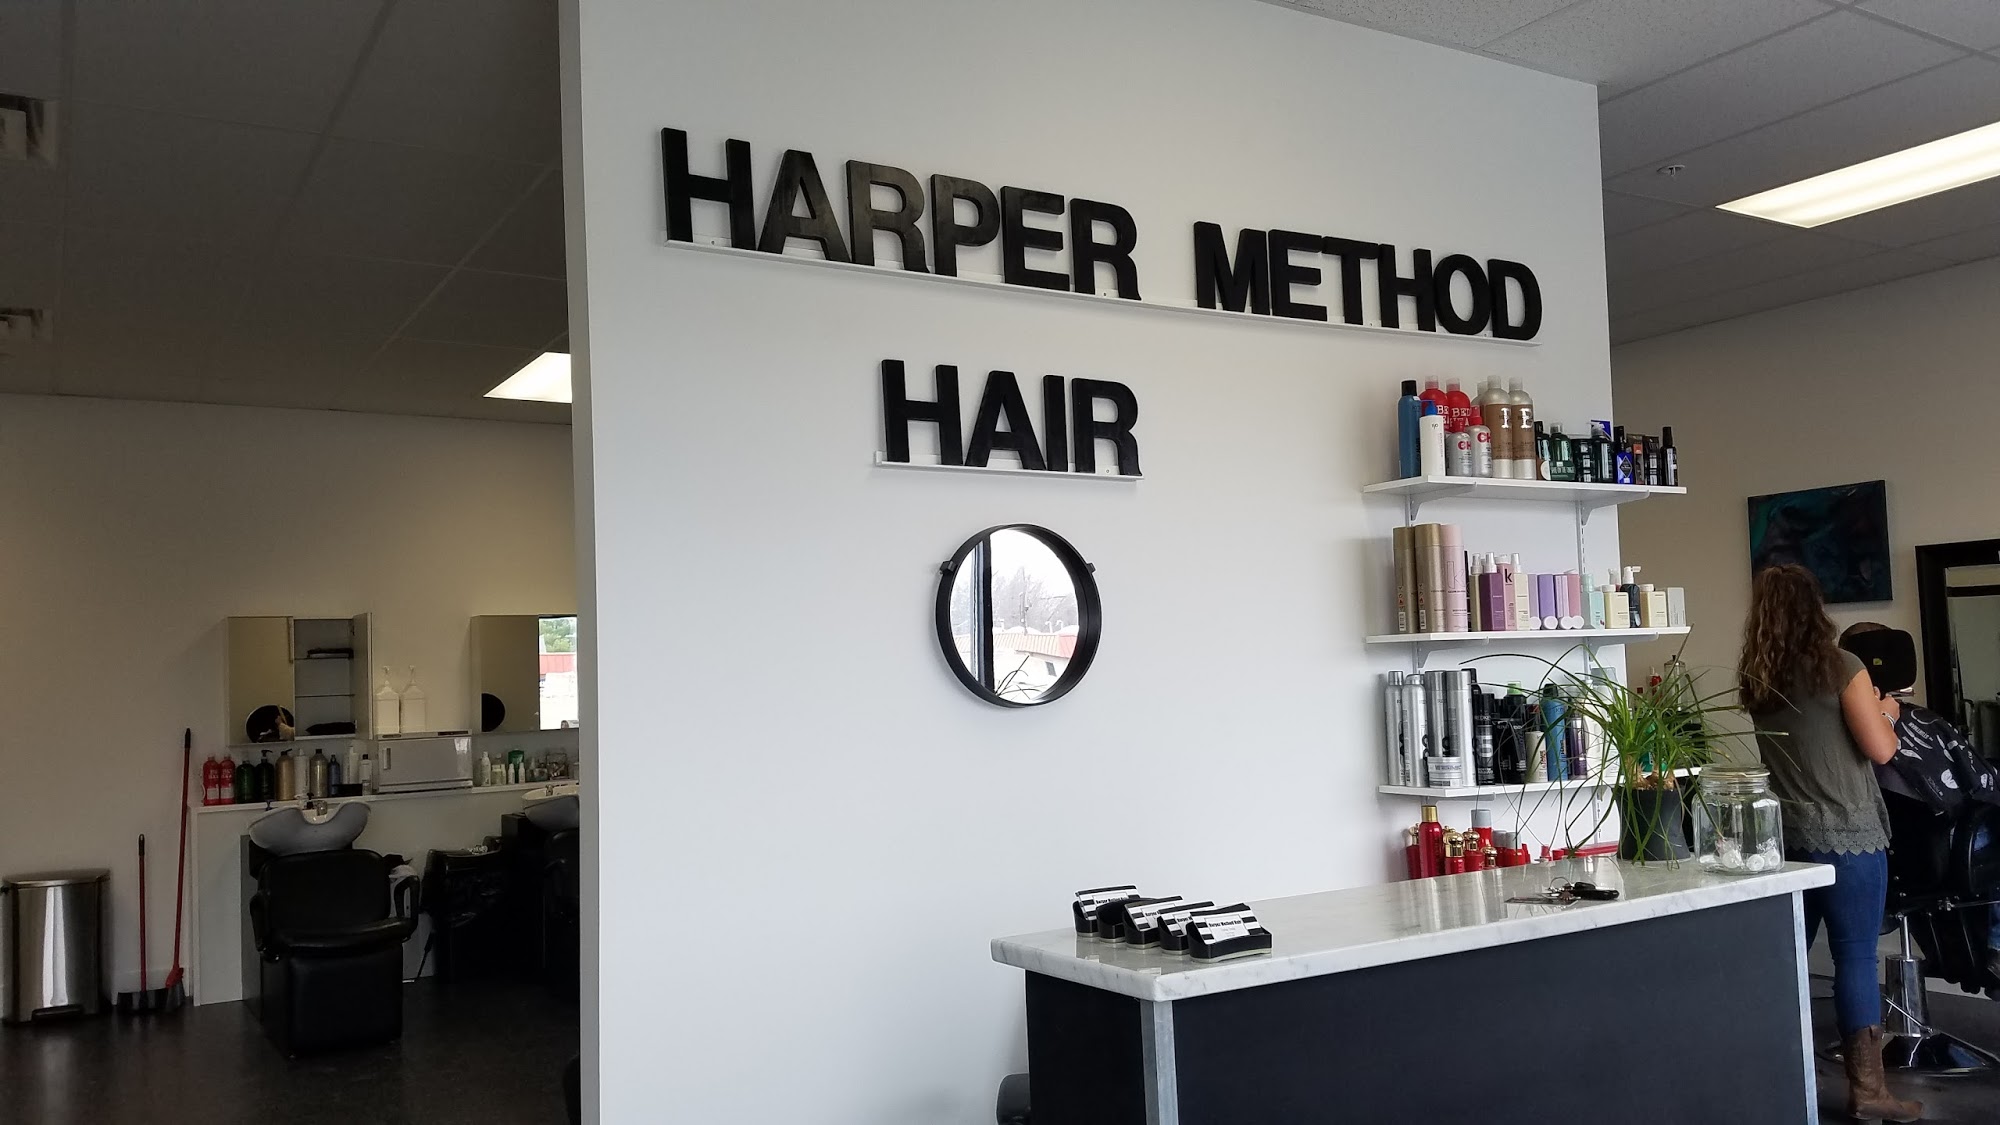 Harper Method Hair